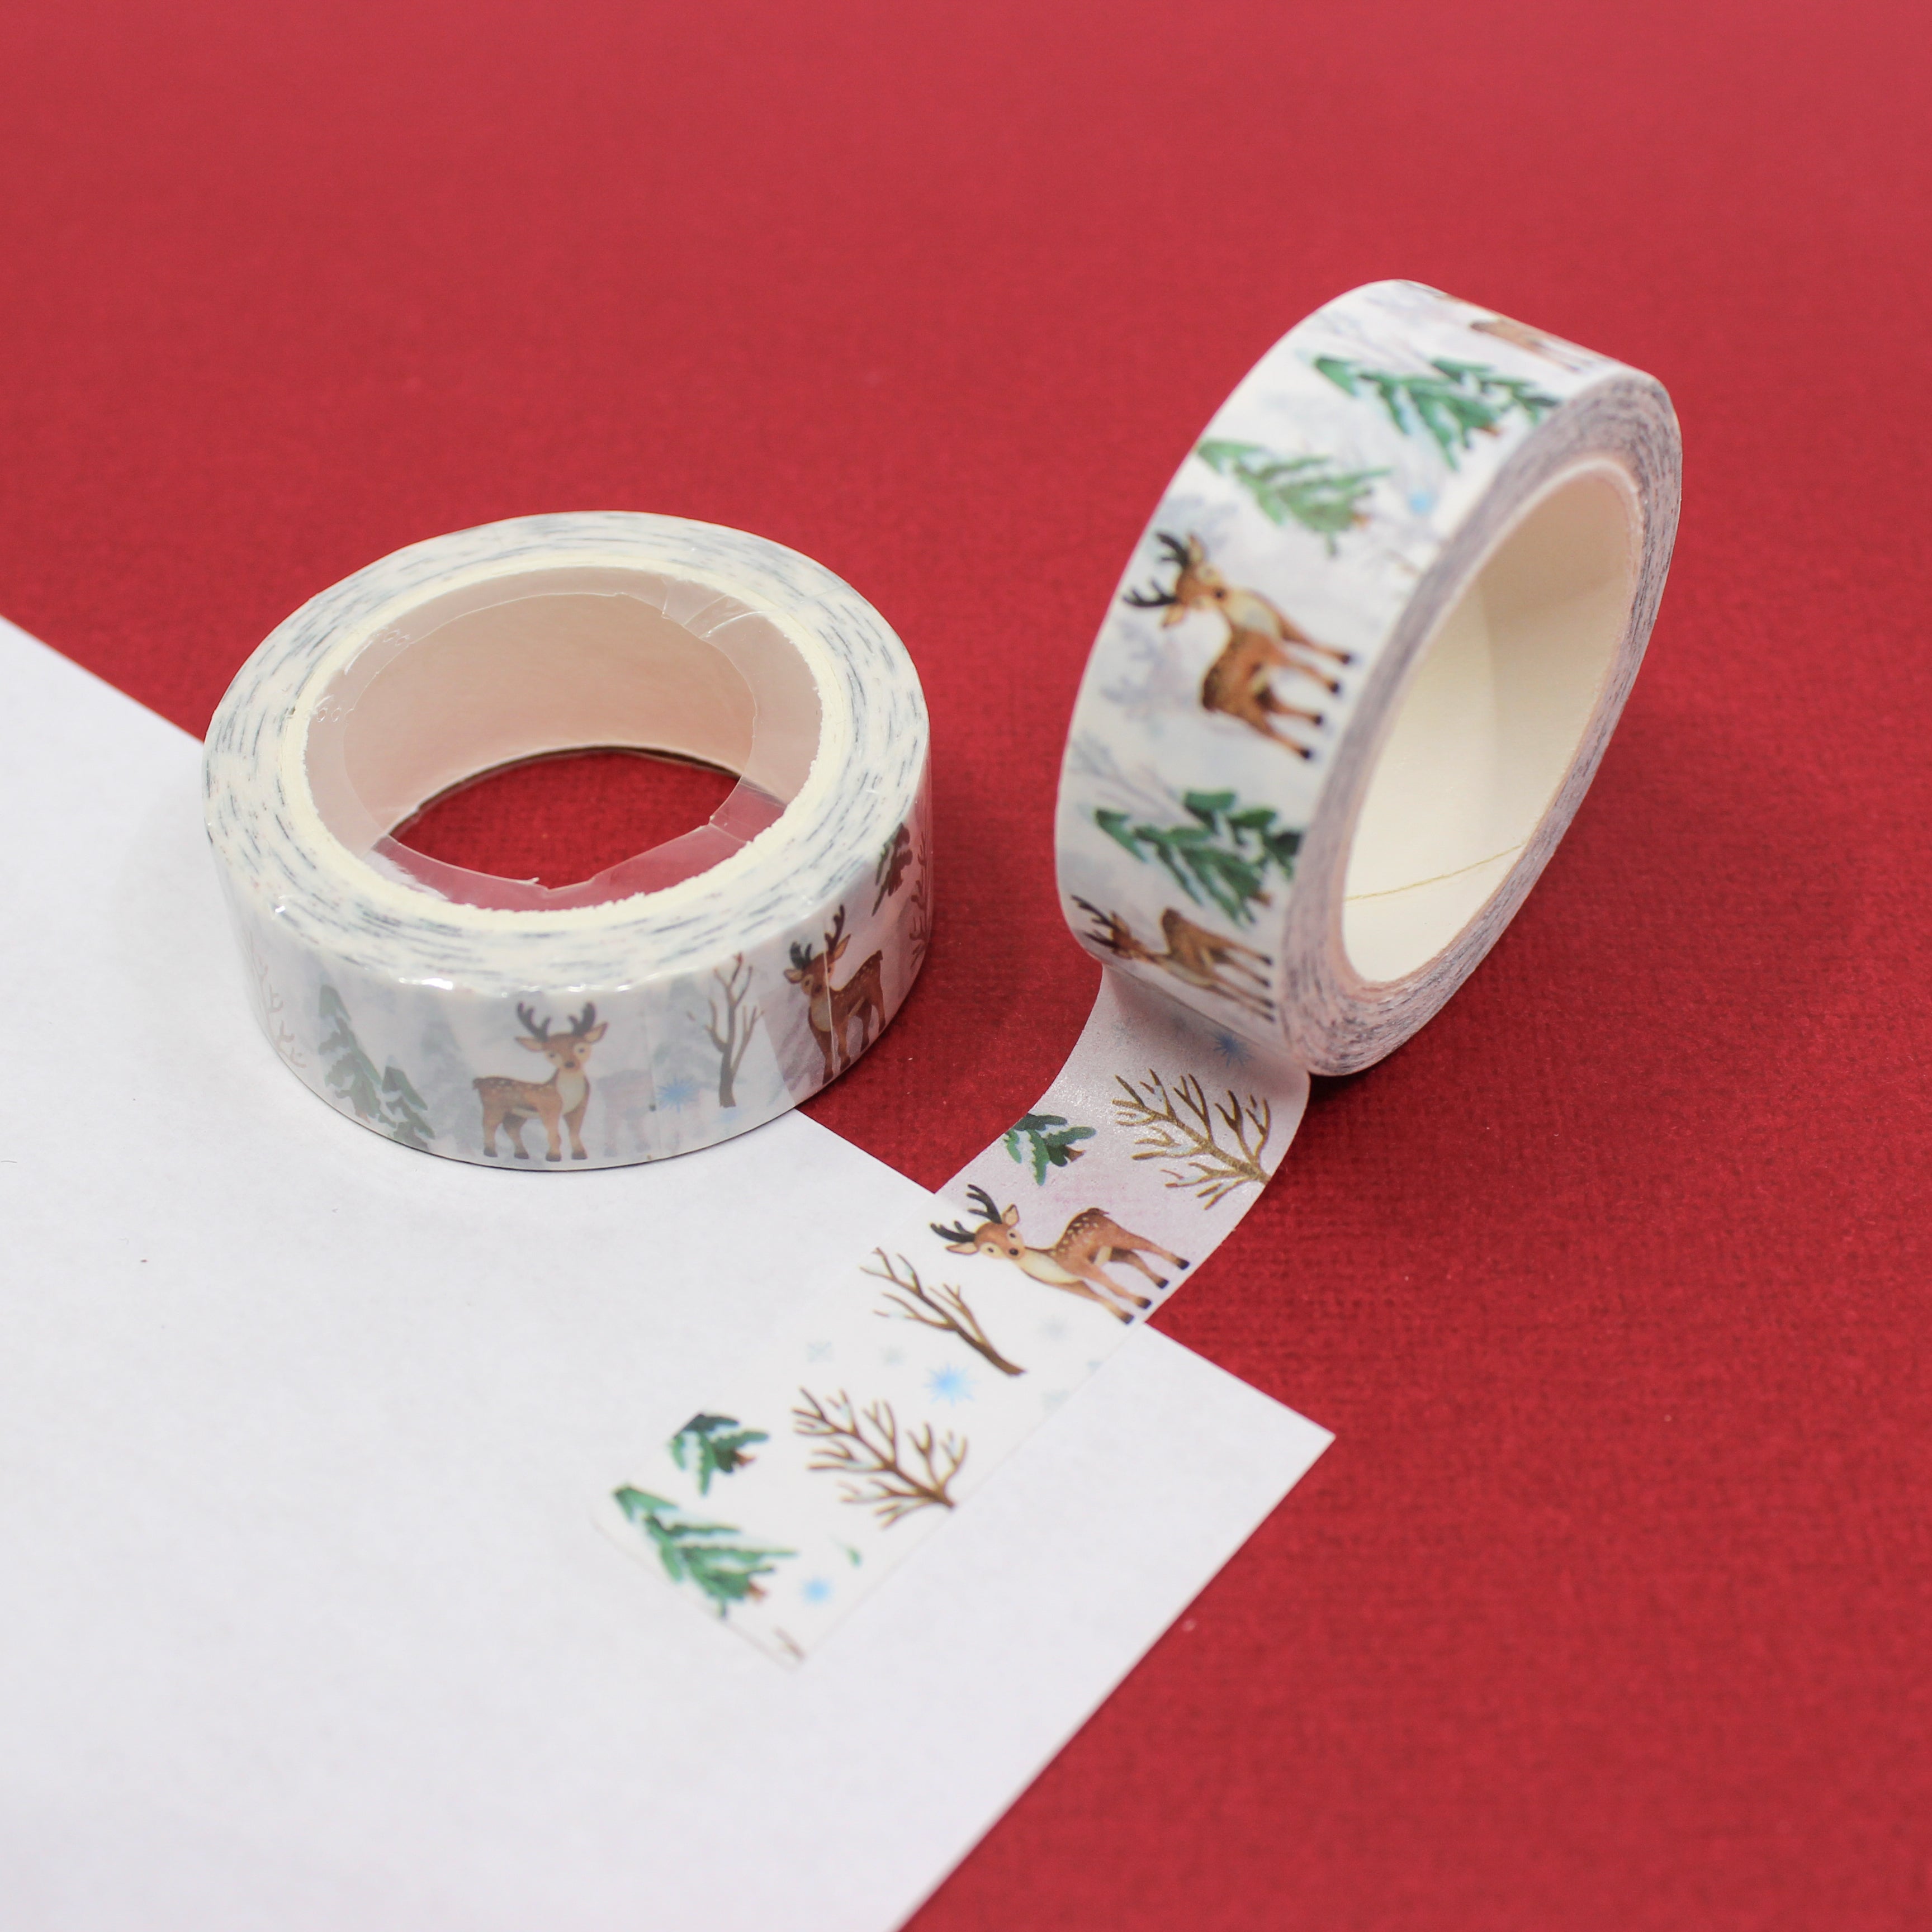 How to Make Homemade Washi Tape - Creative Fabrica